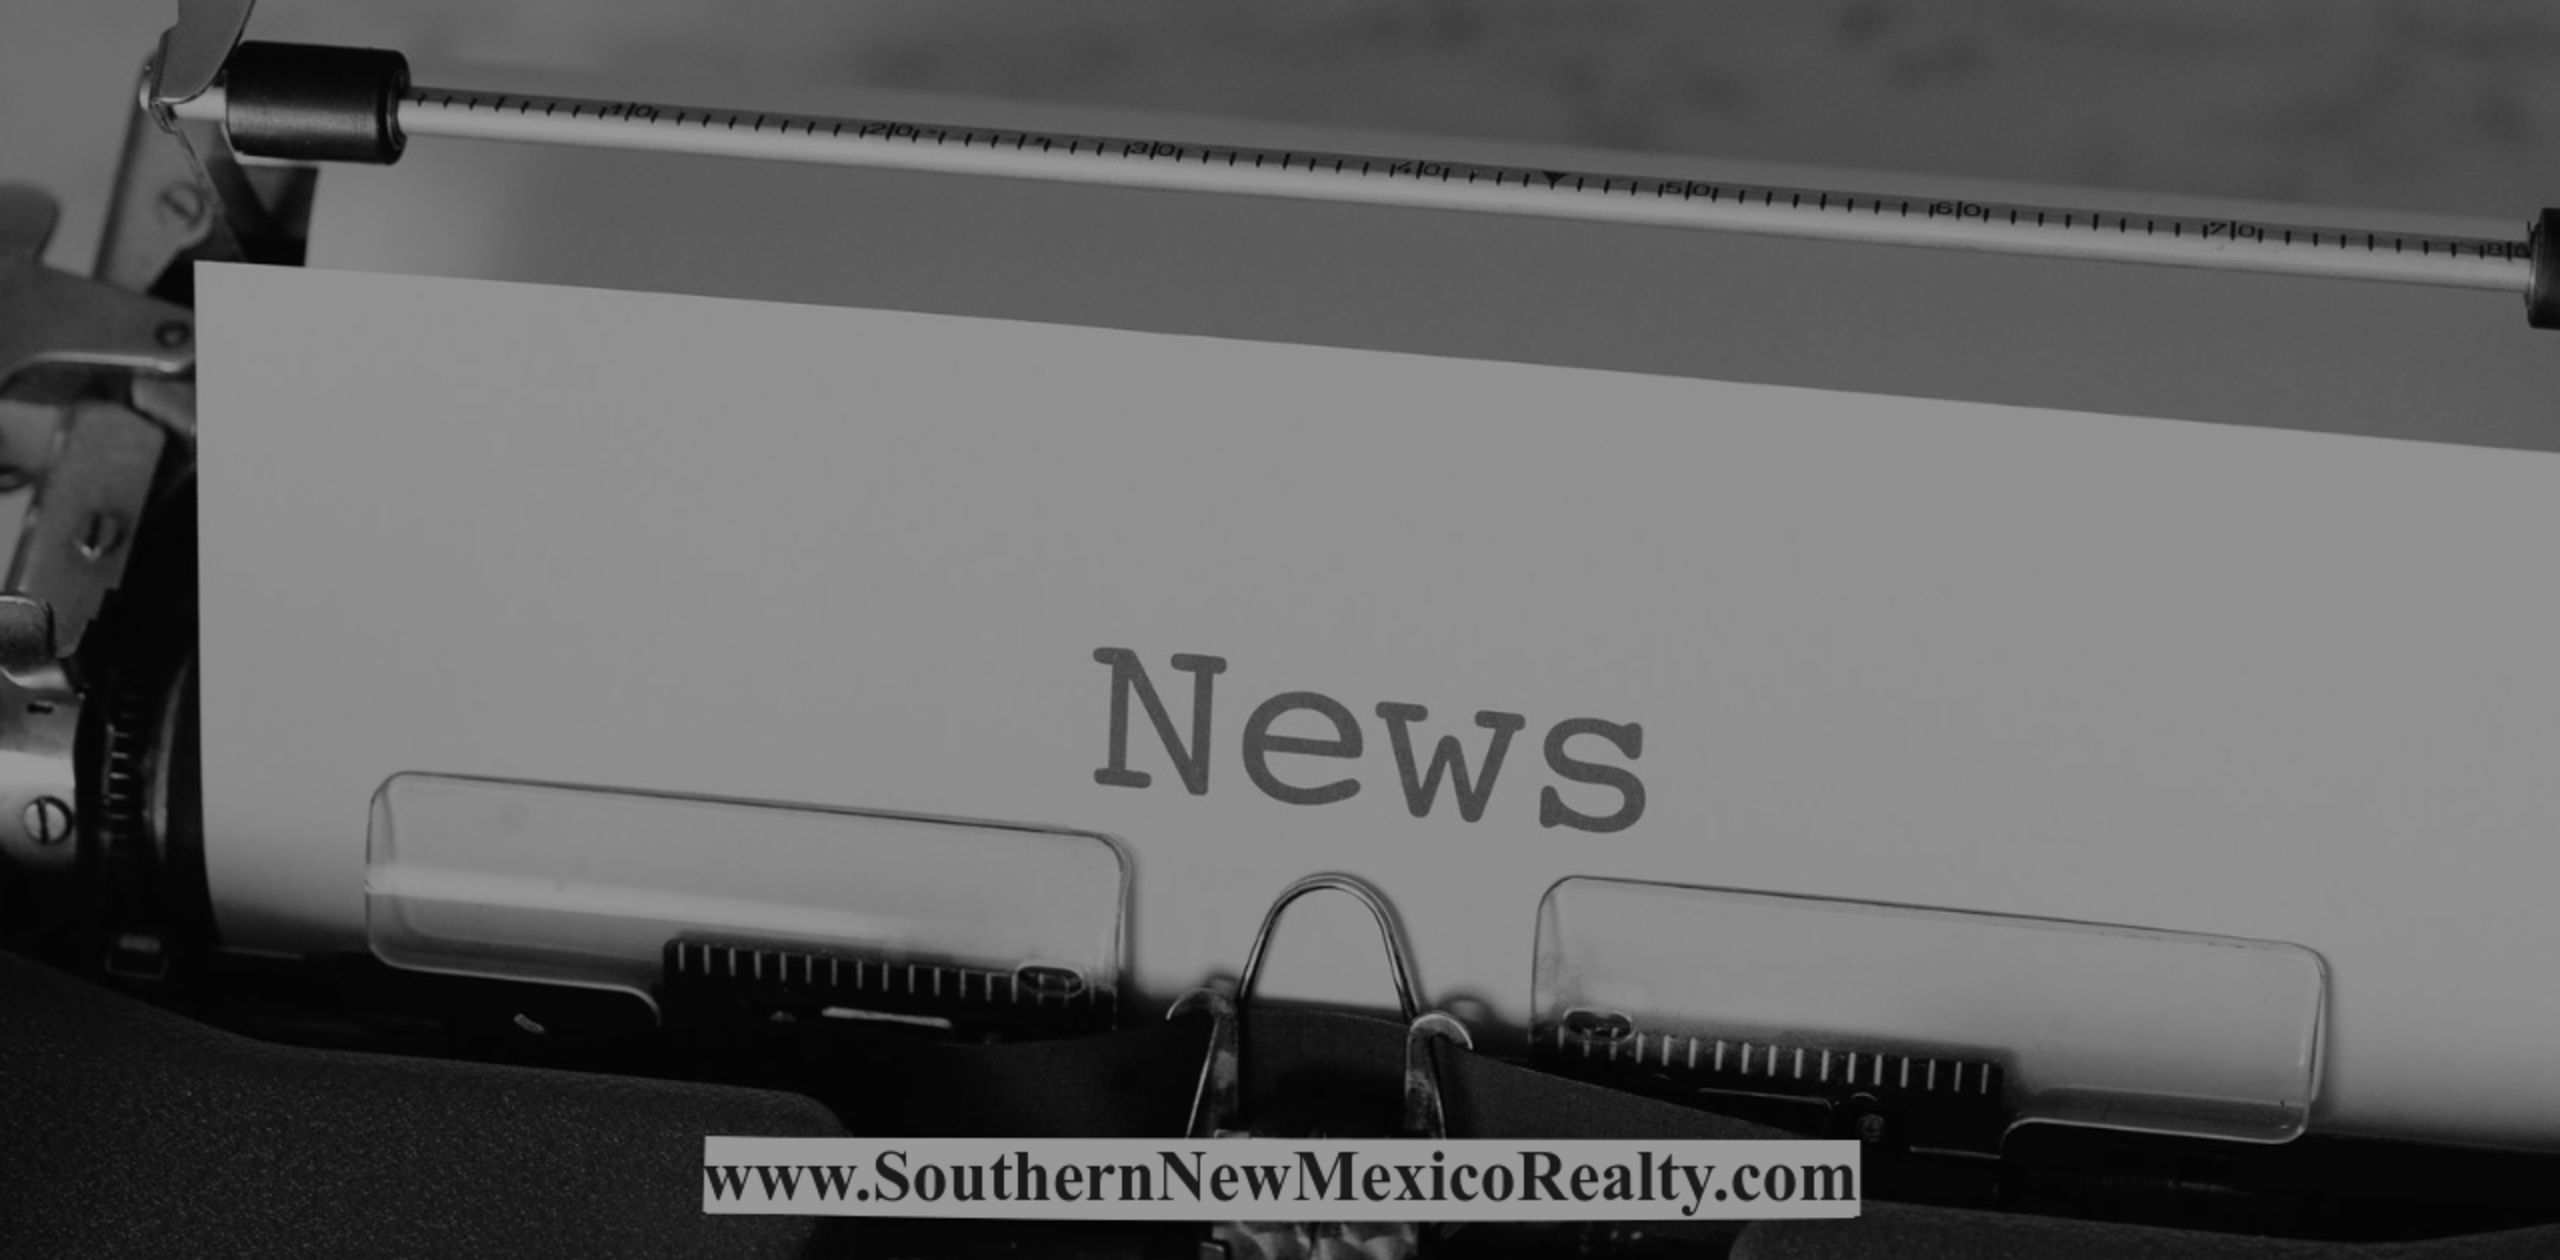 Real Estate News in the Ruidoso, NM Area